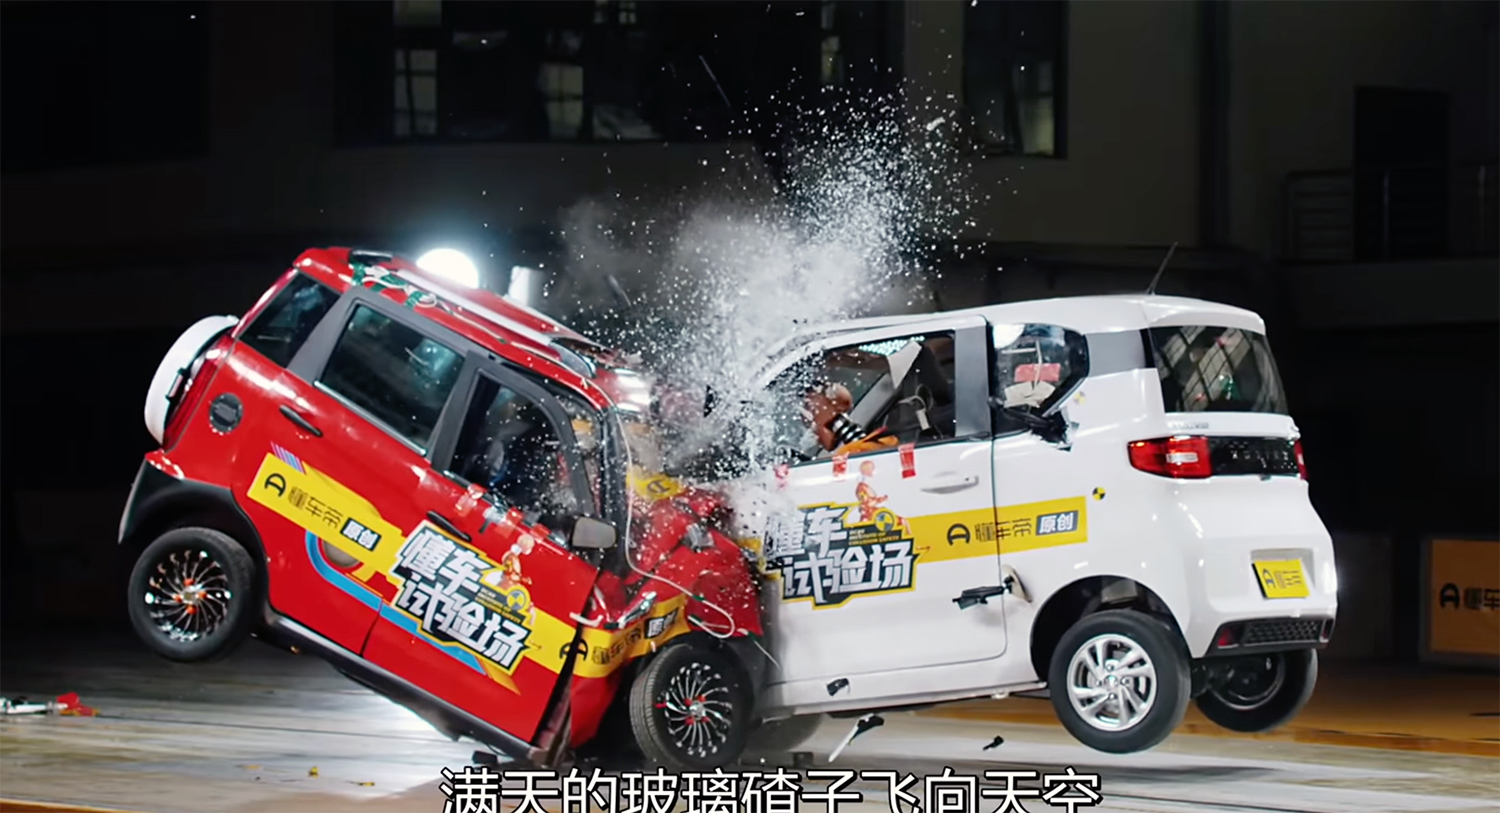 Hình ảnh thử nghiệm va chạm của xe điện siêu nhỏ tại Trung Quốc.